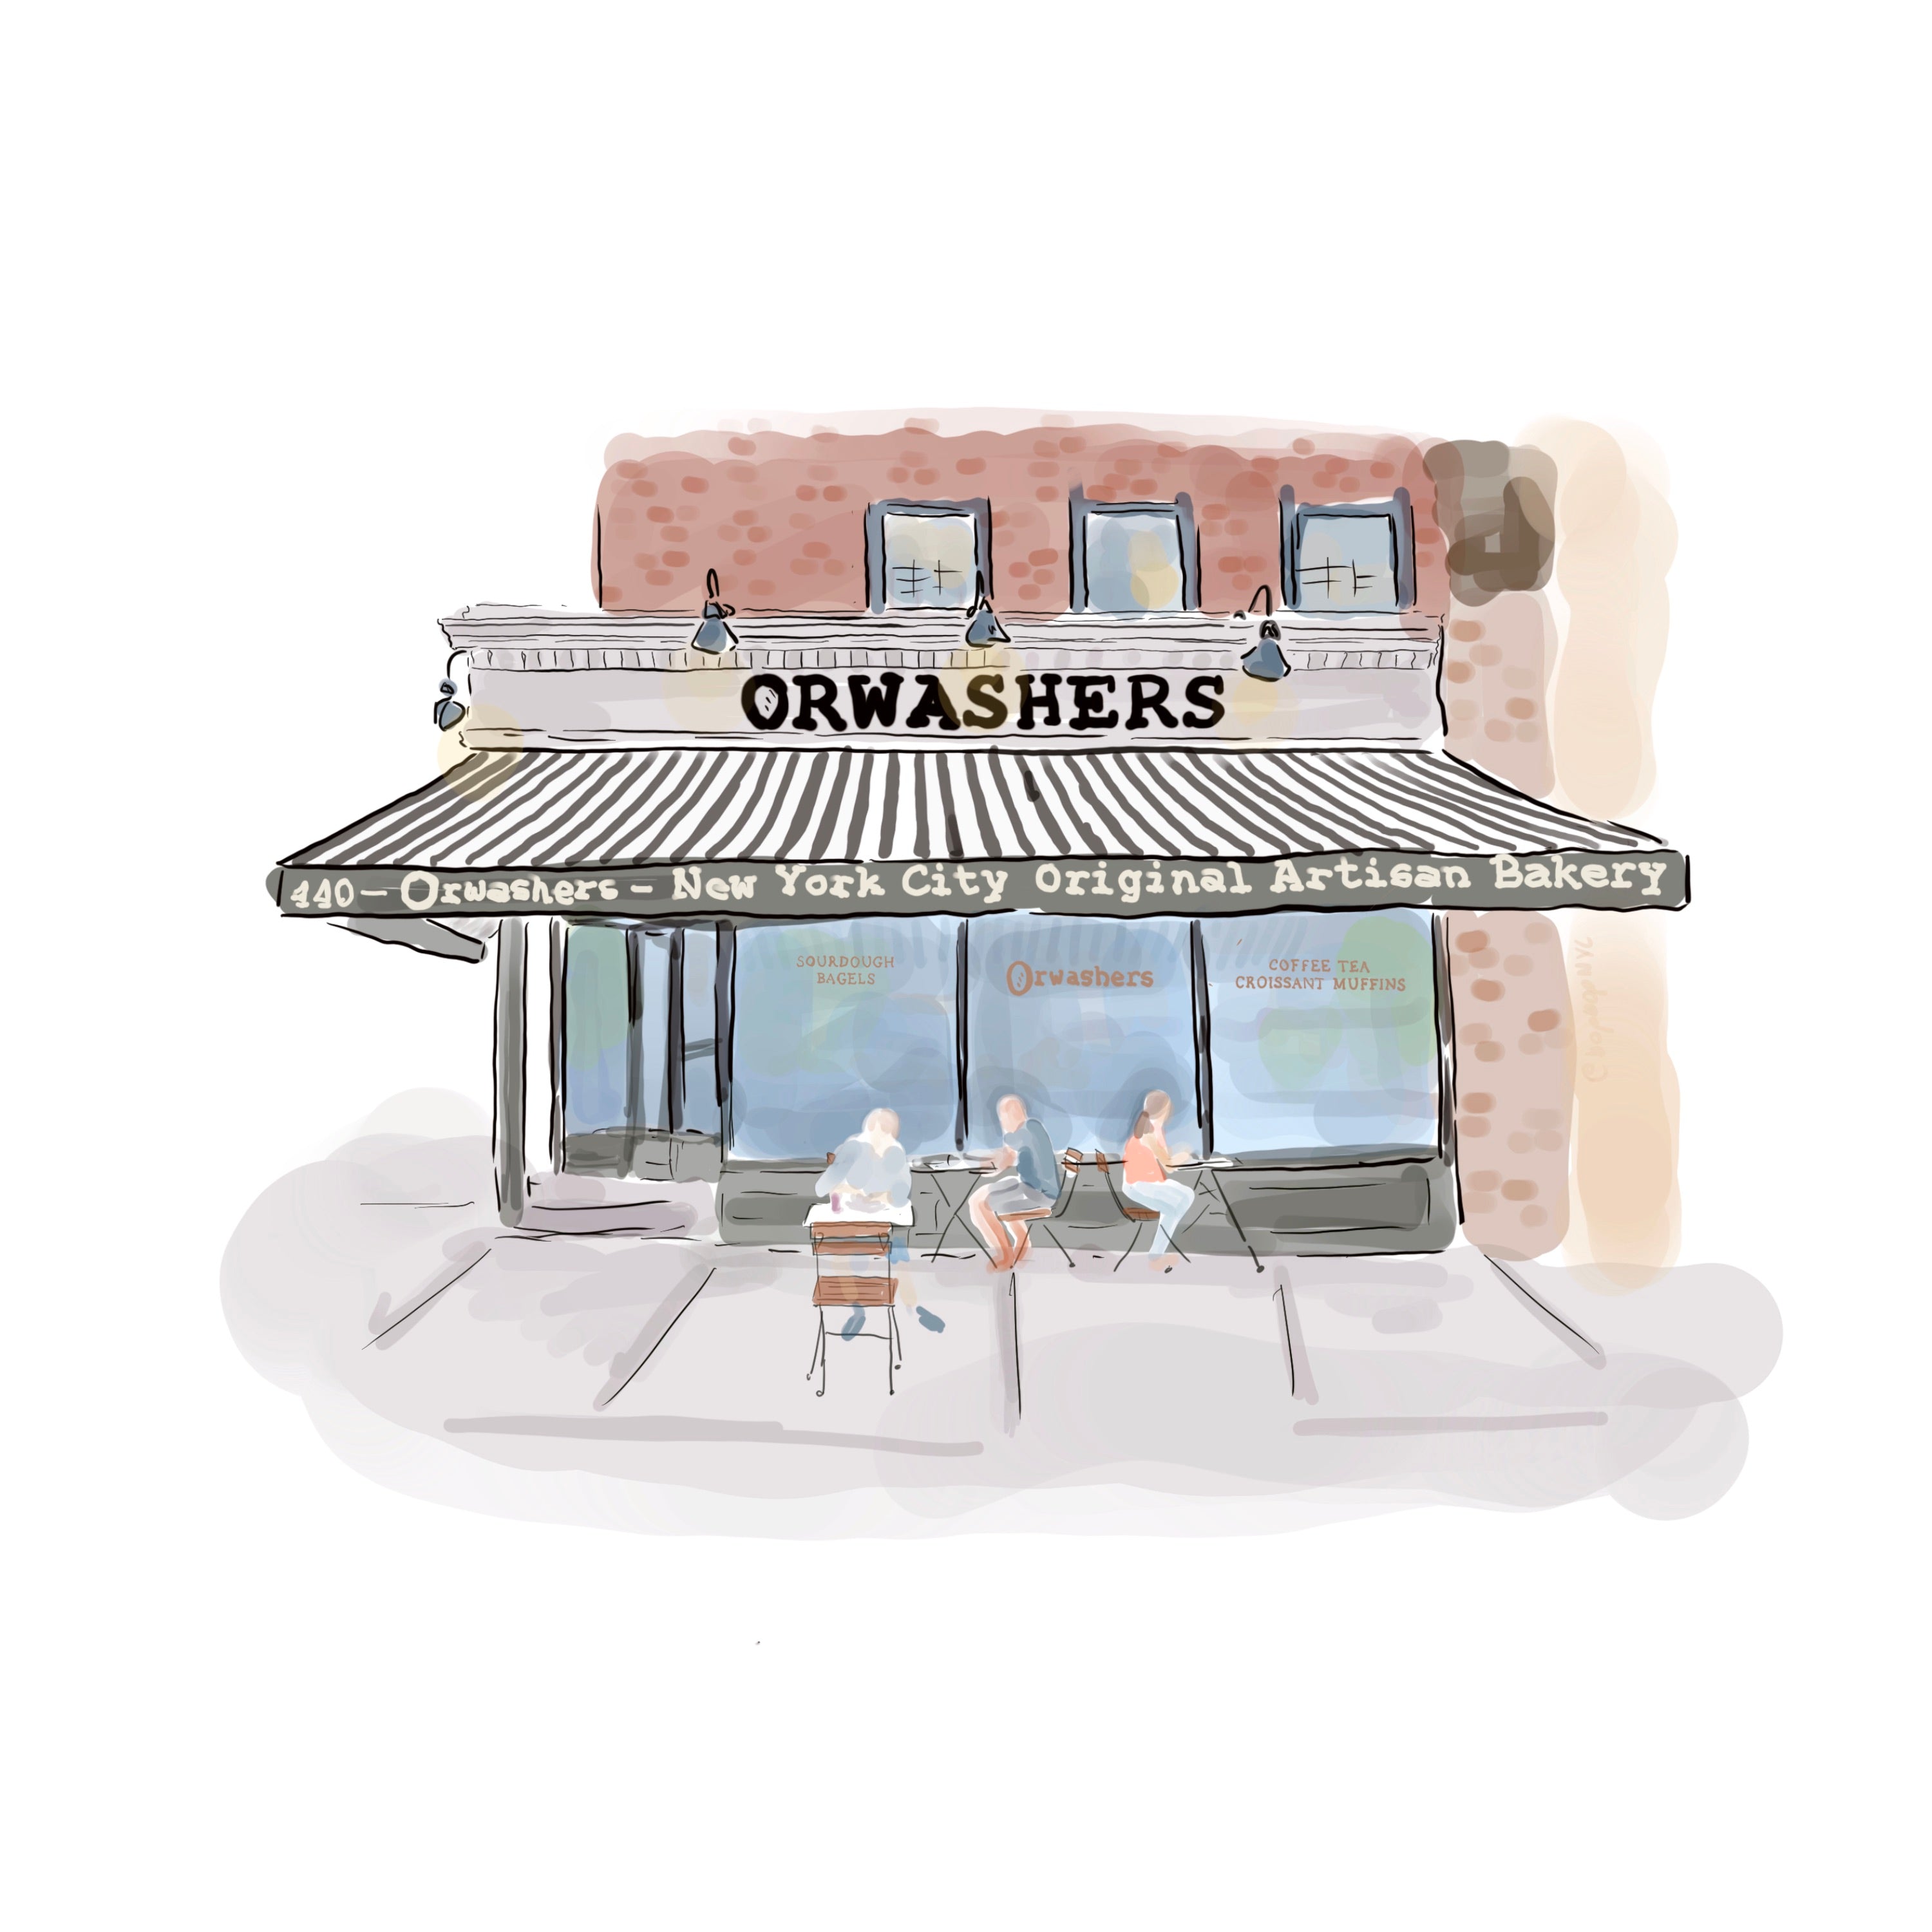 Orwashers Bakery